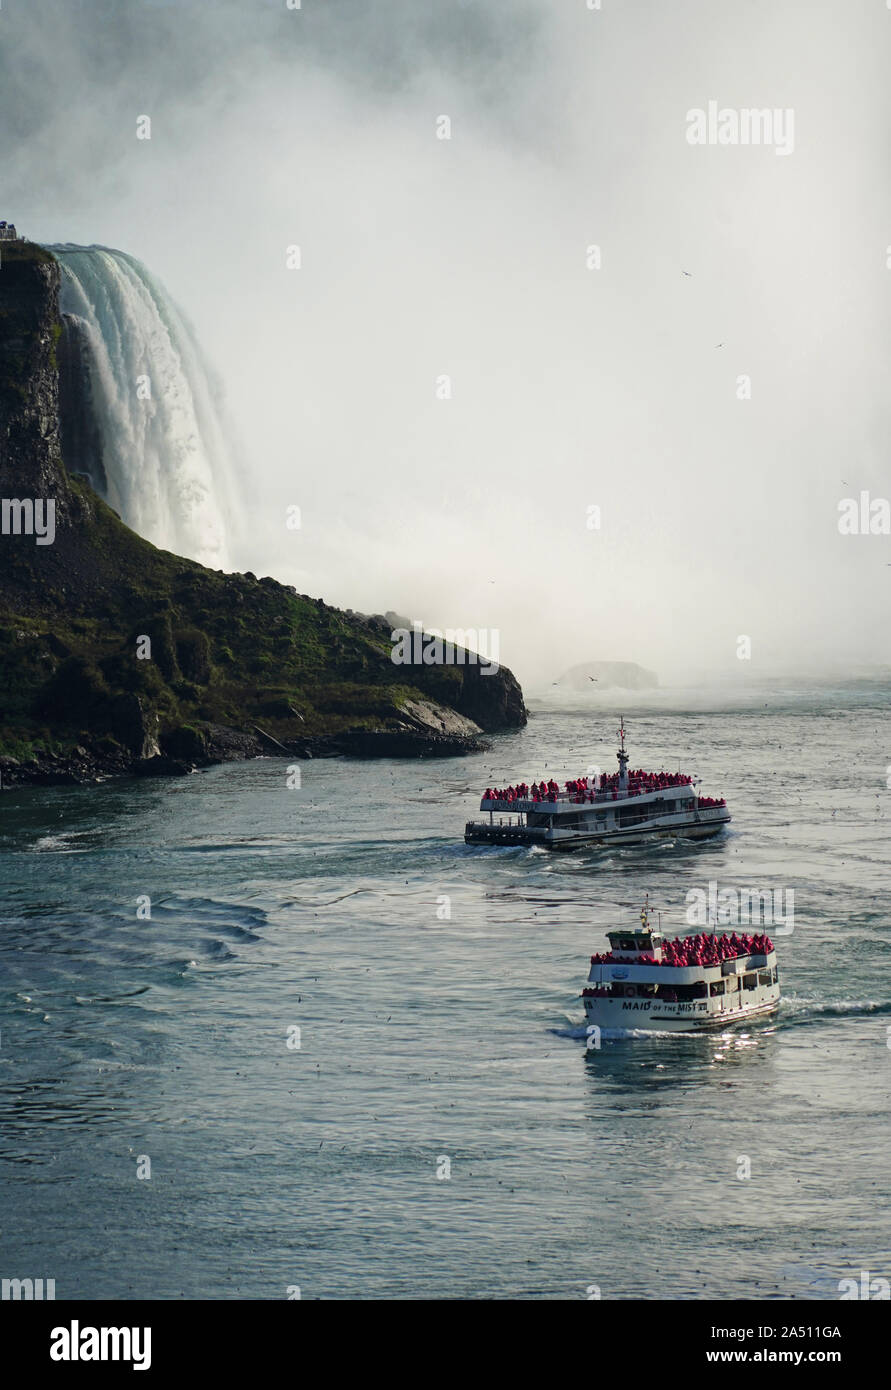 Cascate del Niagara la Domestica della Foschia tour barche Foto Stock